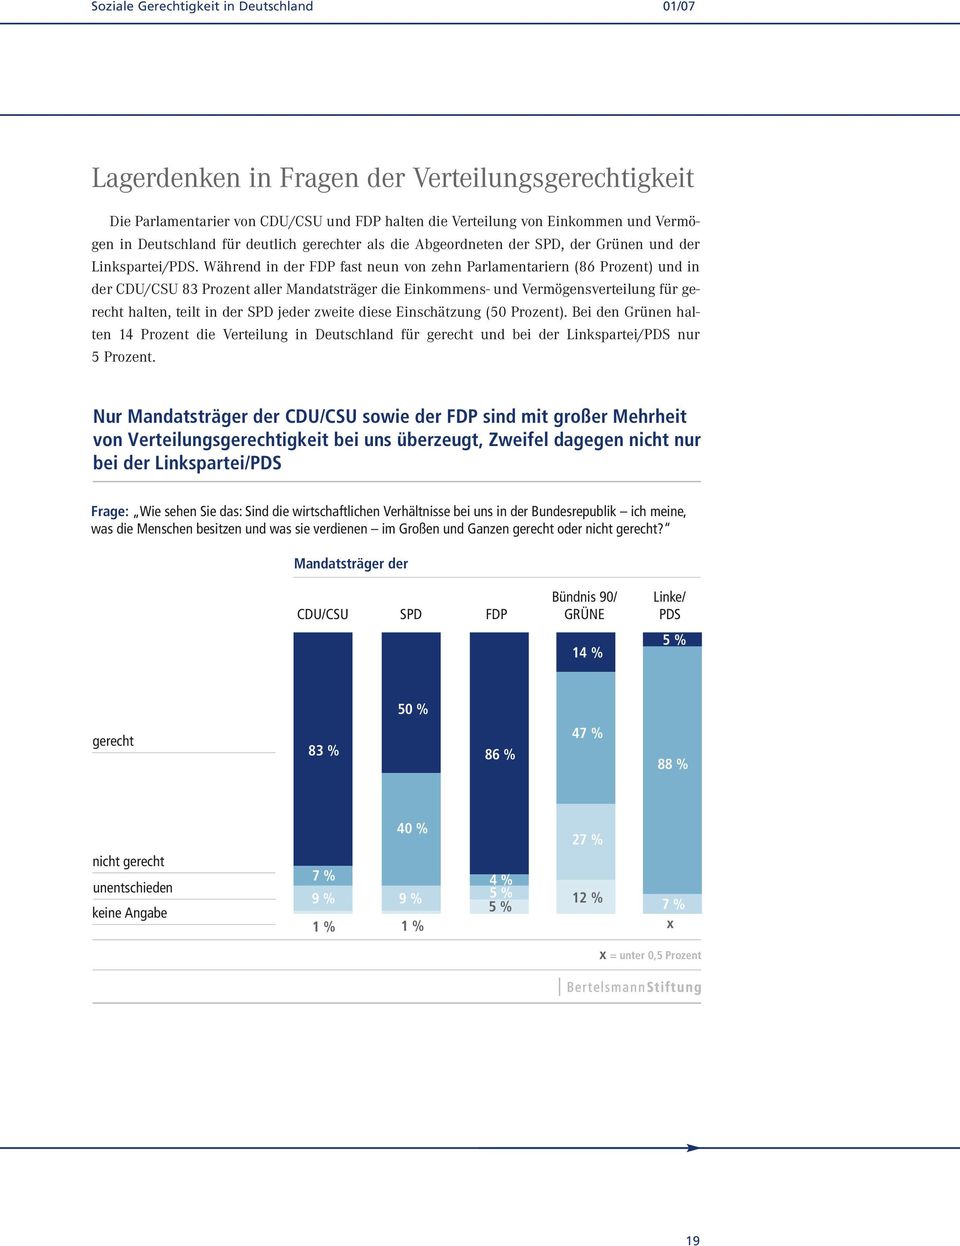 Während in der FDP fast neun von zehn Parlamentariern (86 Prozent) und in der CDU/CSU 83 Prozent aller Mandatsträger die Einkommens- und Vermögensverteilung für gerecht halten, teilt in der SPD jeder